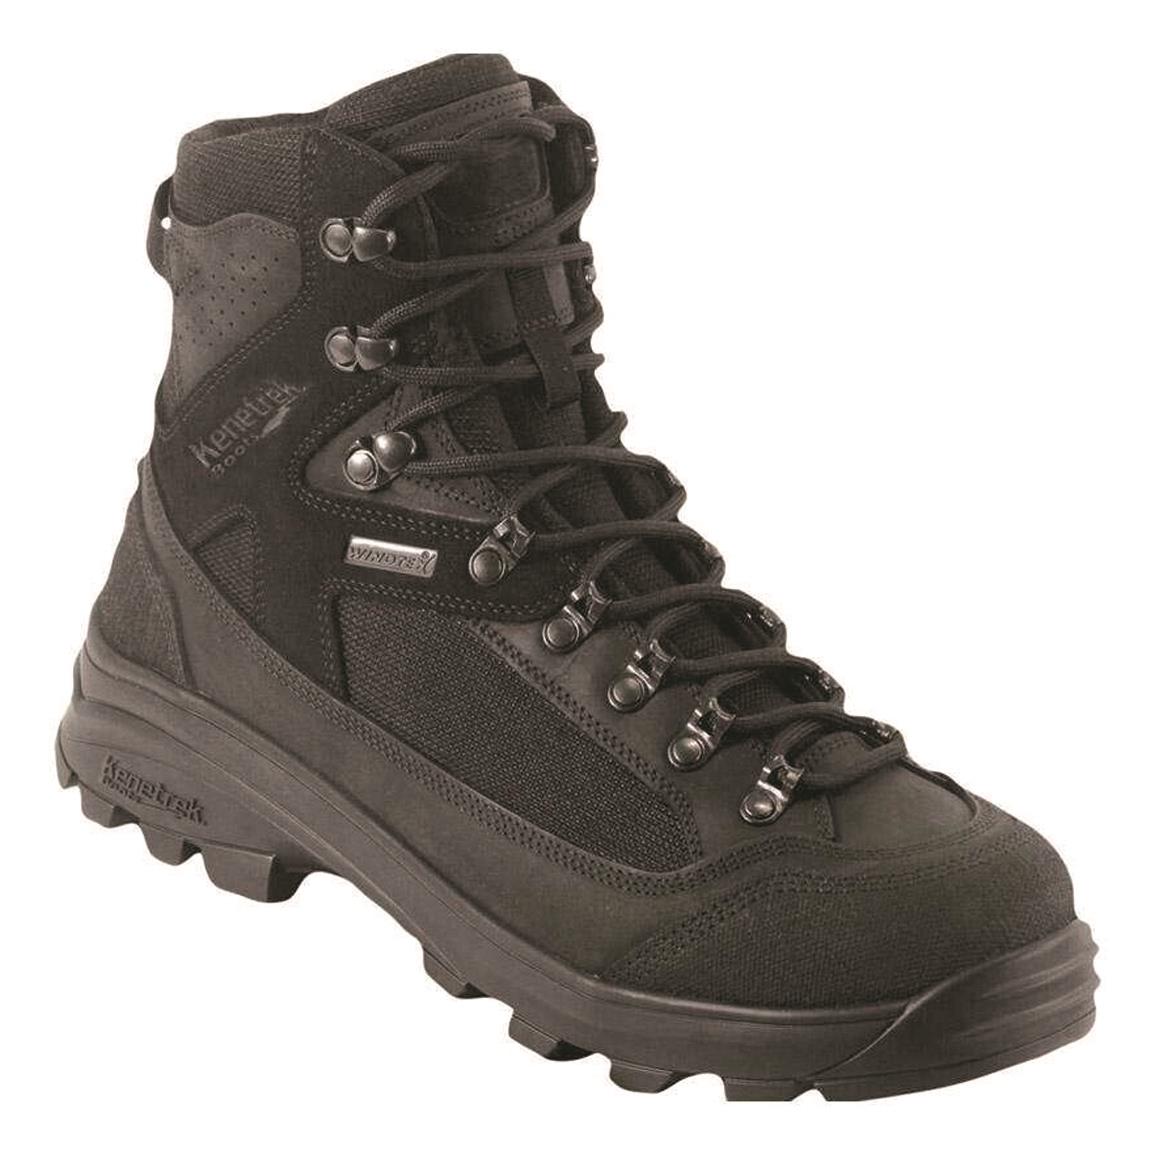 Kenetrek Men's Corrie 3.2 Waterproof Tactical Hiking Boots, Black